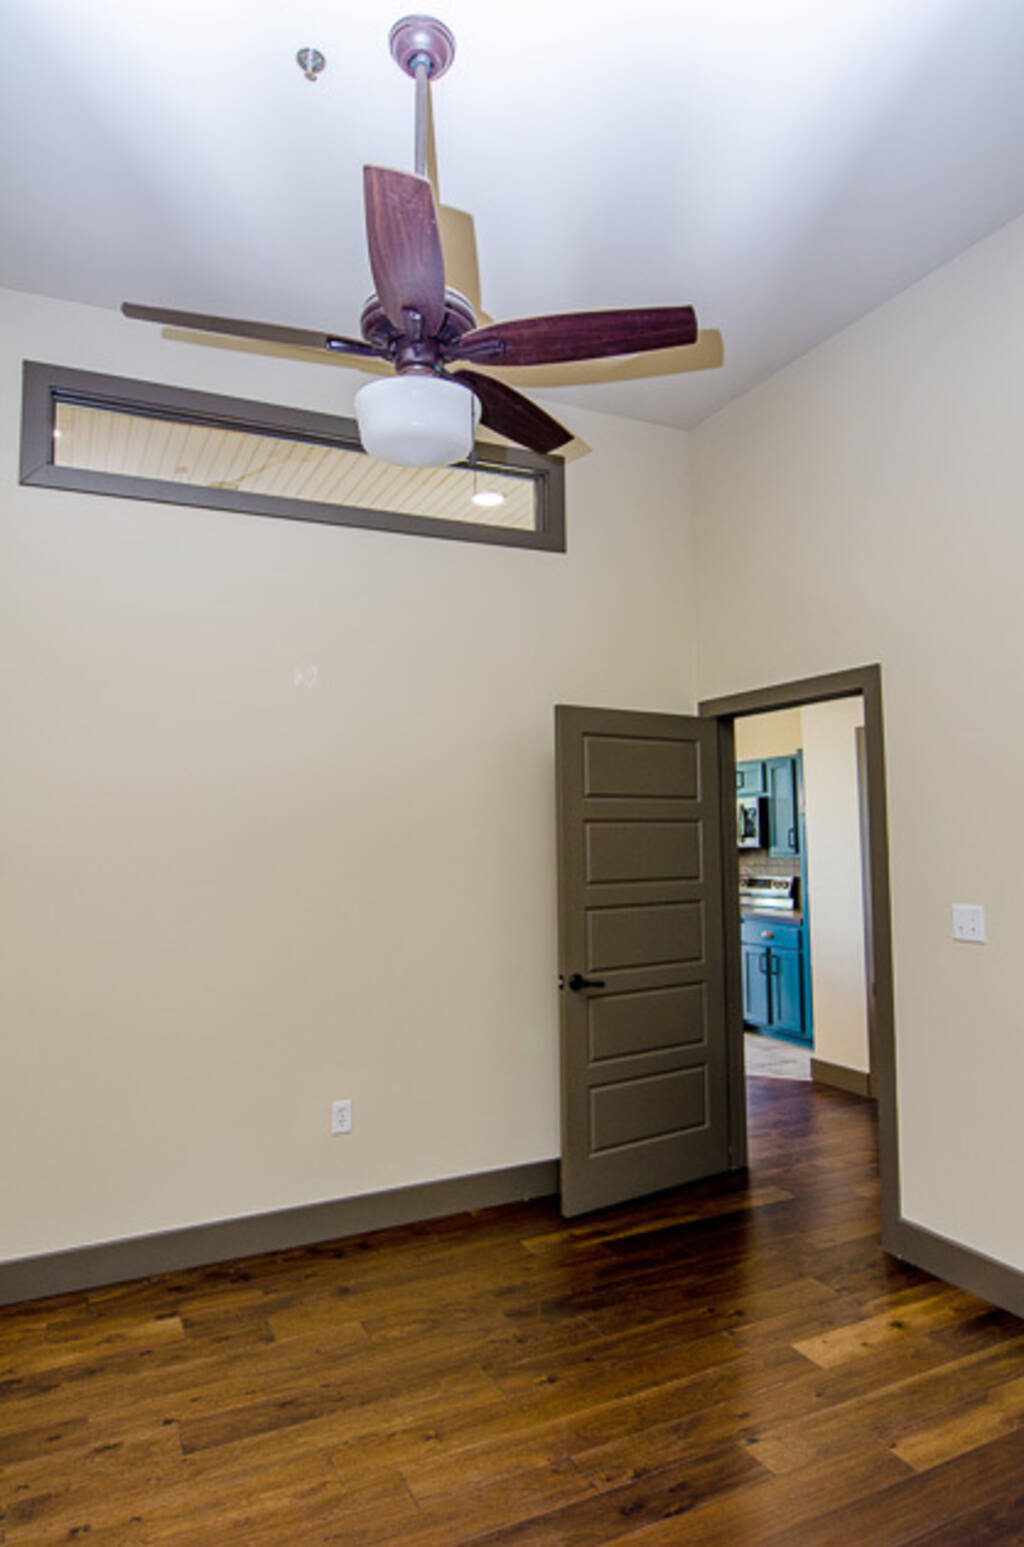 Loft 2A Ceiling fan and door